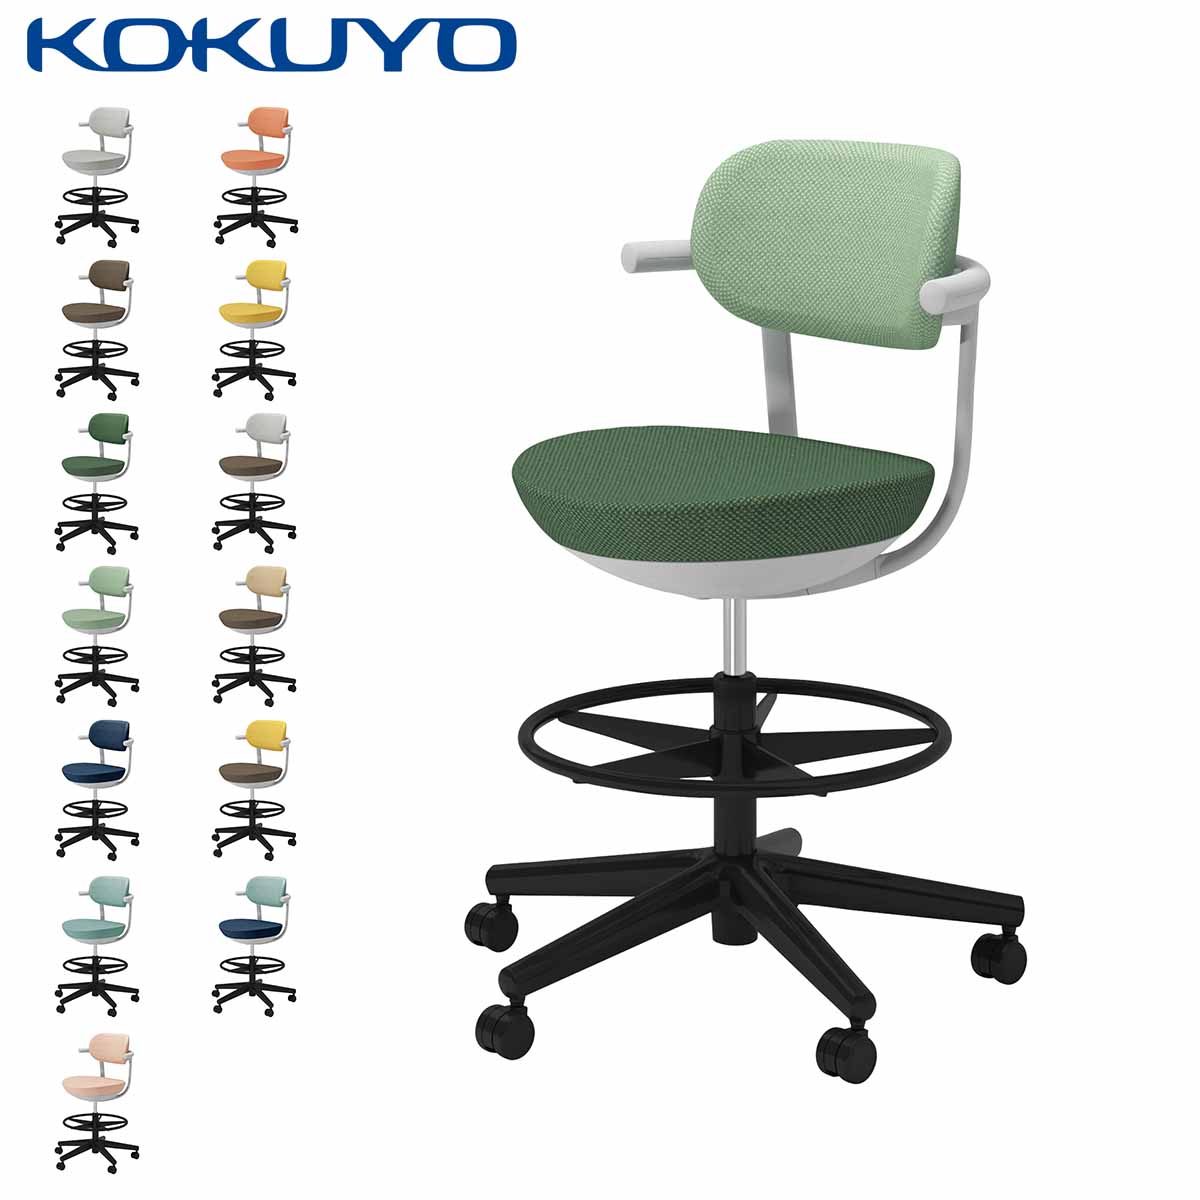 コクヨ デスクチェア オフィスチェア 椅子 pallo パロ C07-B21CU-E2 背クッションタイプ ハイタイプ 本体グレー ブラック脚